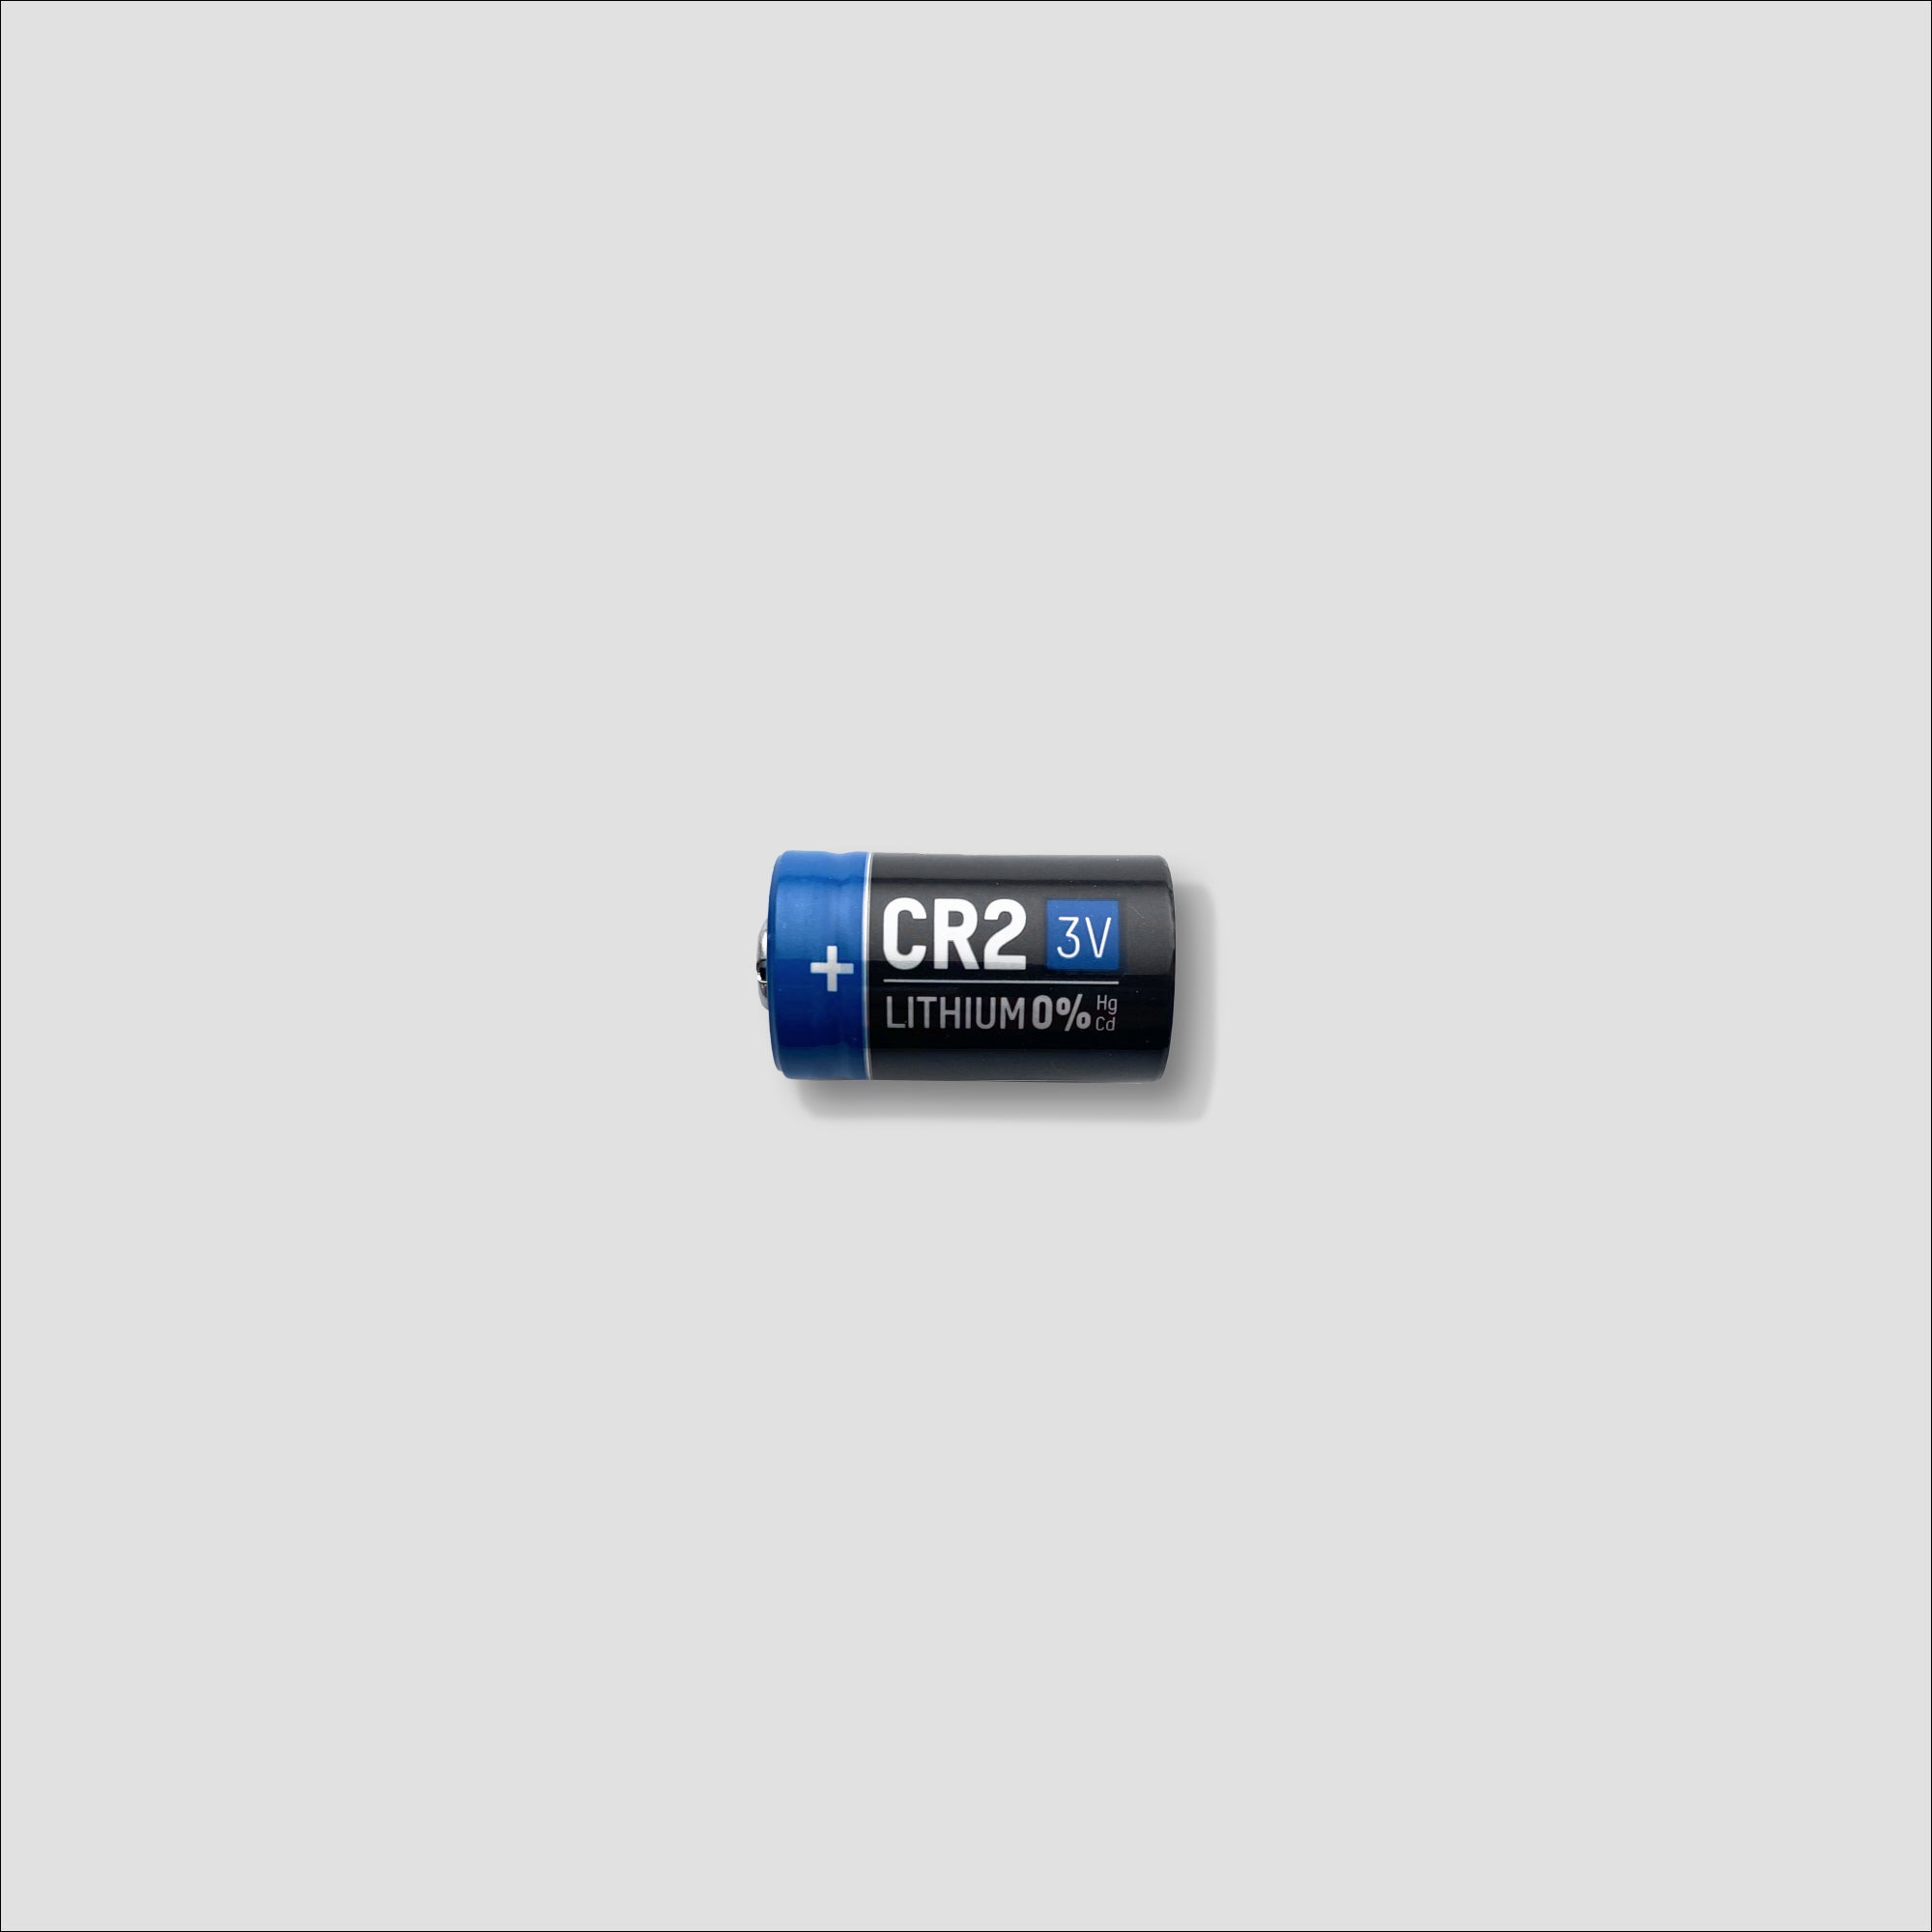 CR2 battery